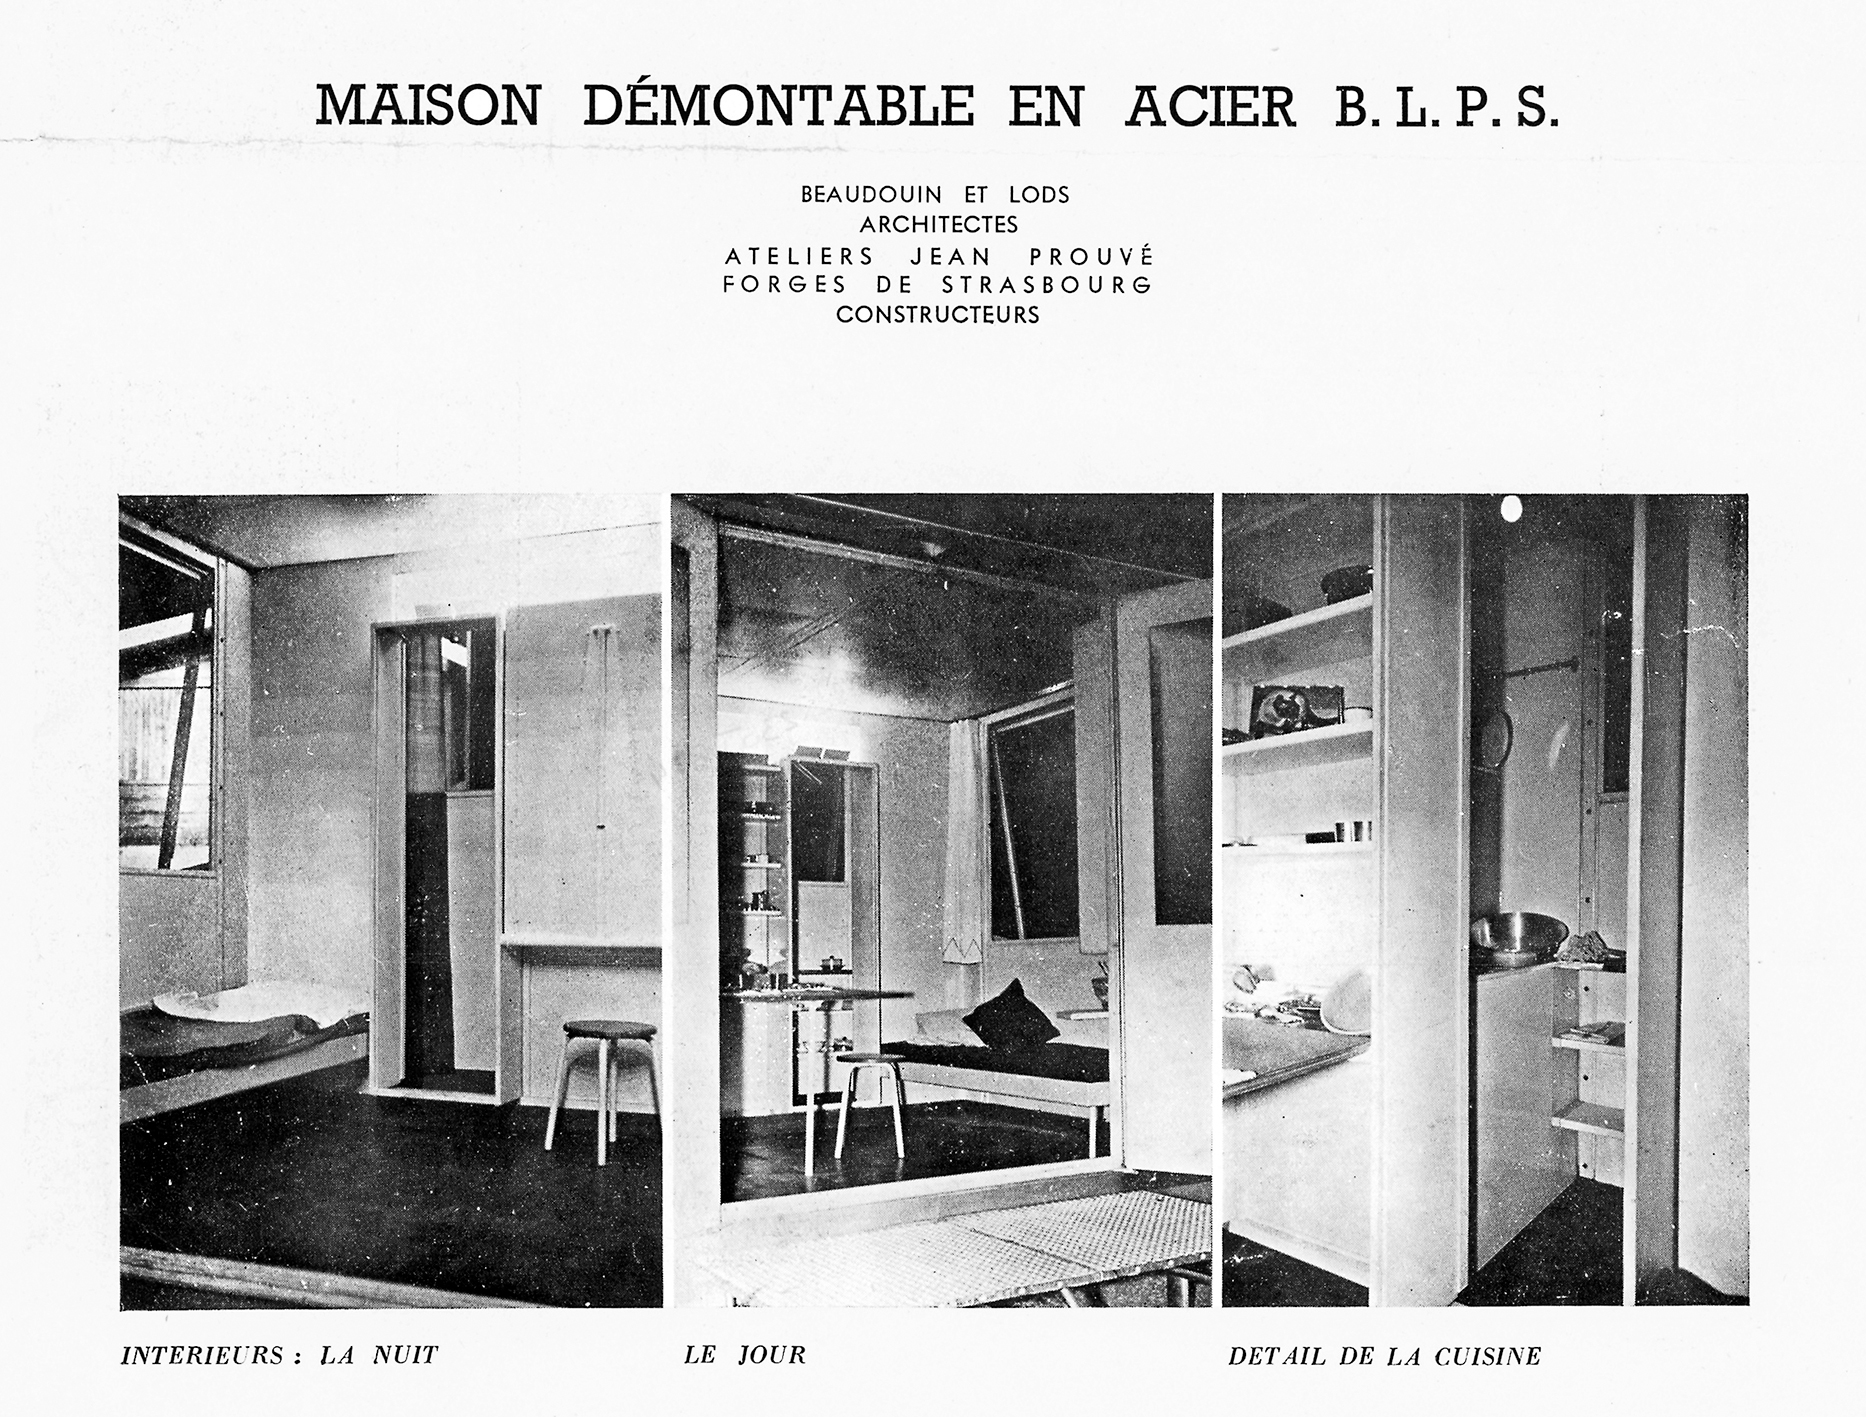 Maison de week-end démontable BLPS (E. Beaudouin et M. Lods, arch., Ateliers Jean Prouvé, concepteur, Les Forges de Strasbourg, constructeur, 1937). Intérieur du prototype.